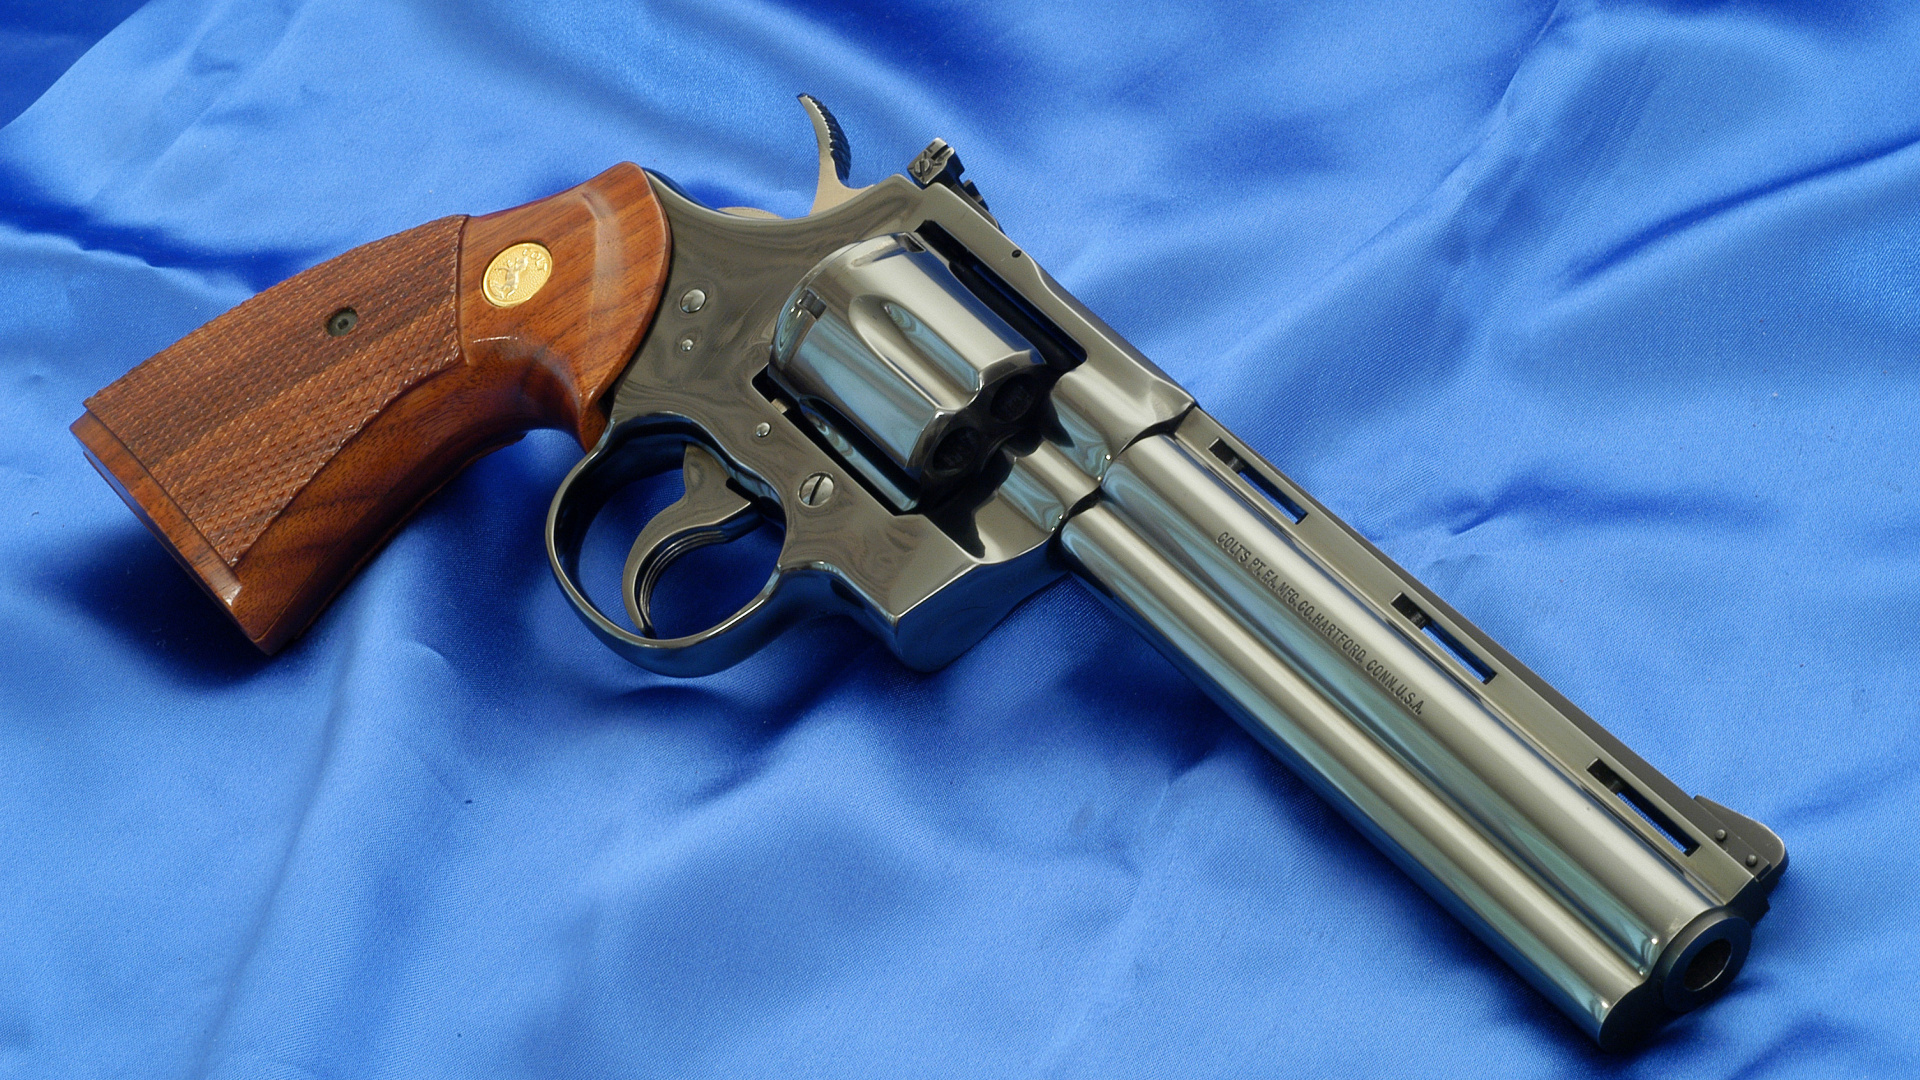 Revolver Colt Python, Handgun, Gun, M1911 Pistol, Firearm. Wallpaper in 1920x1080 Resolution